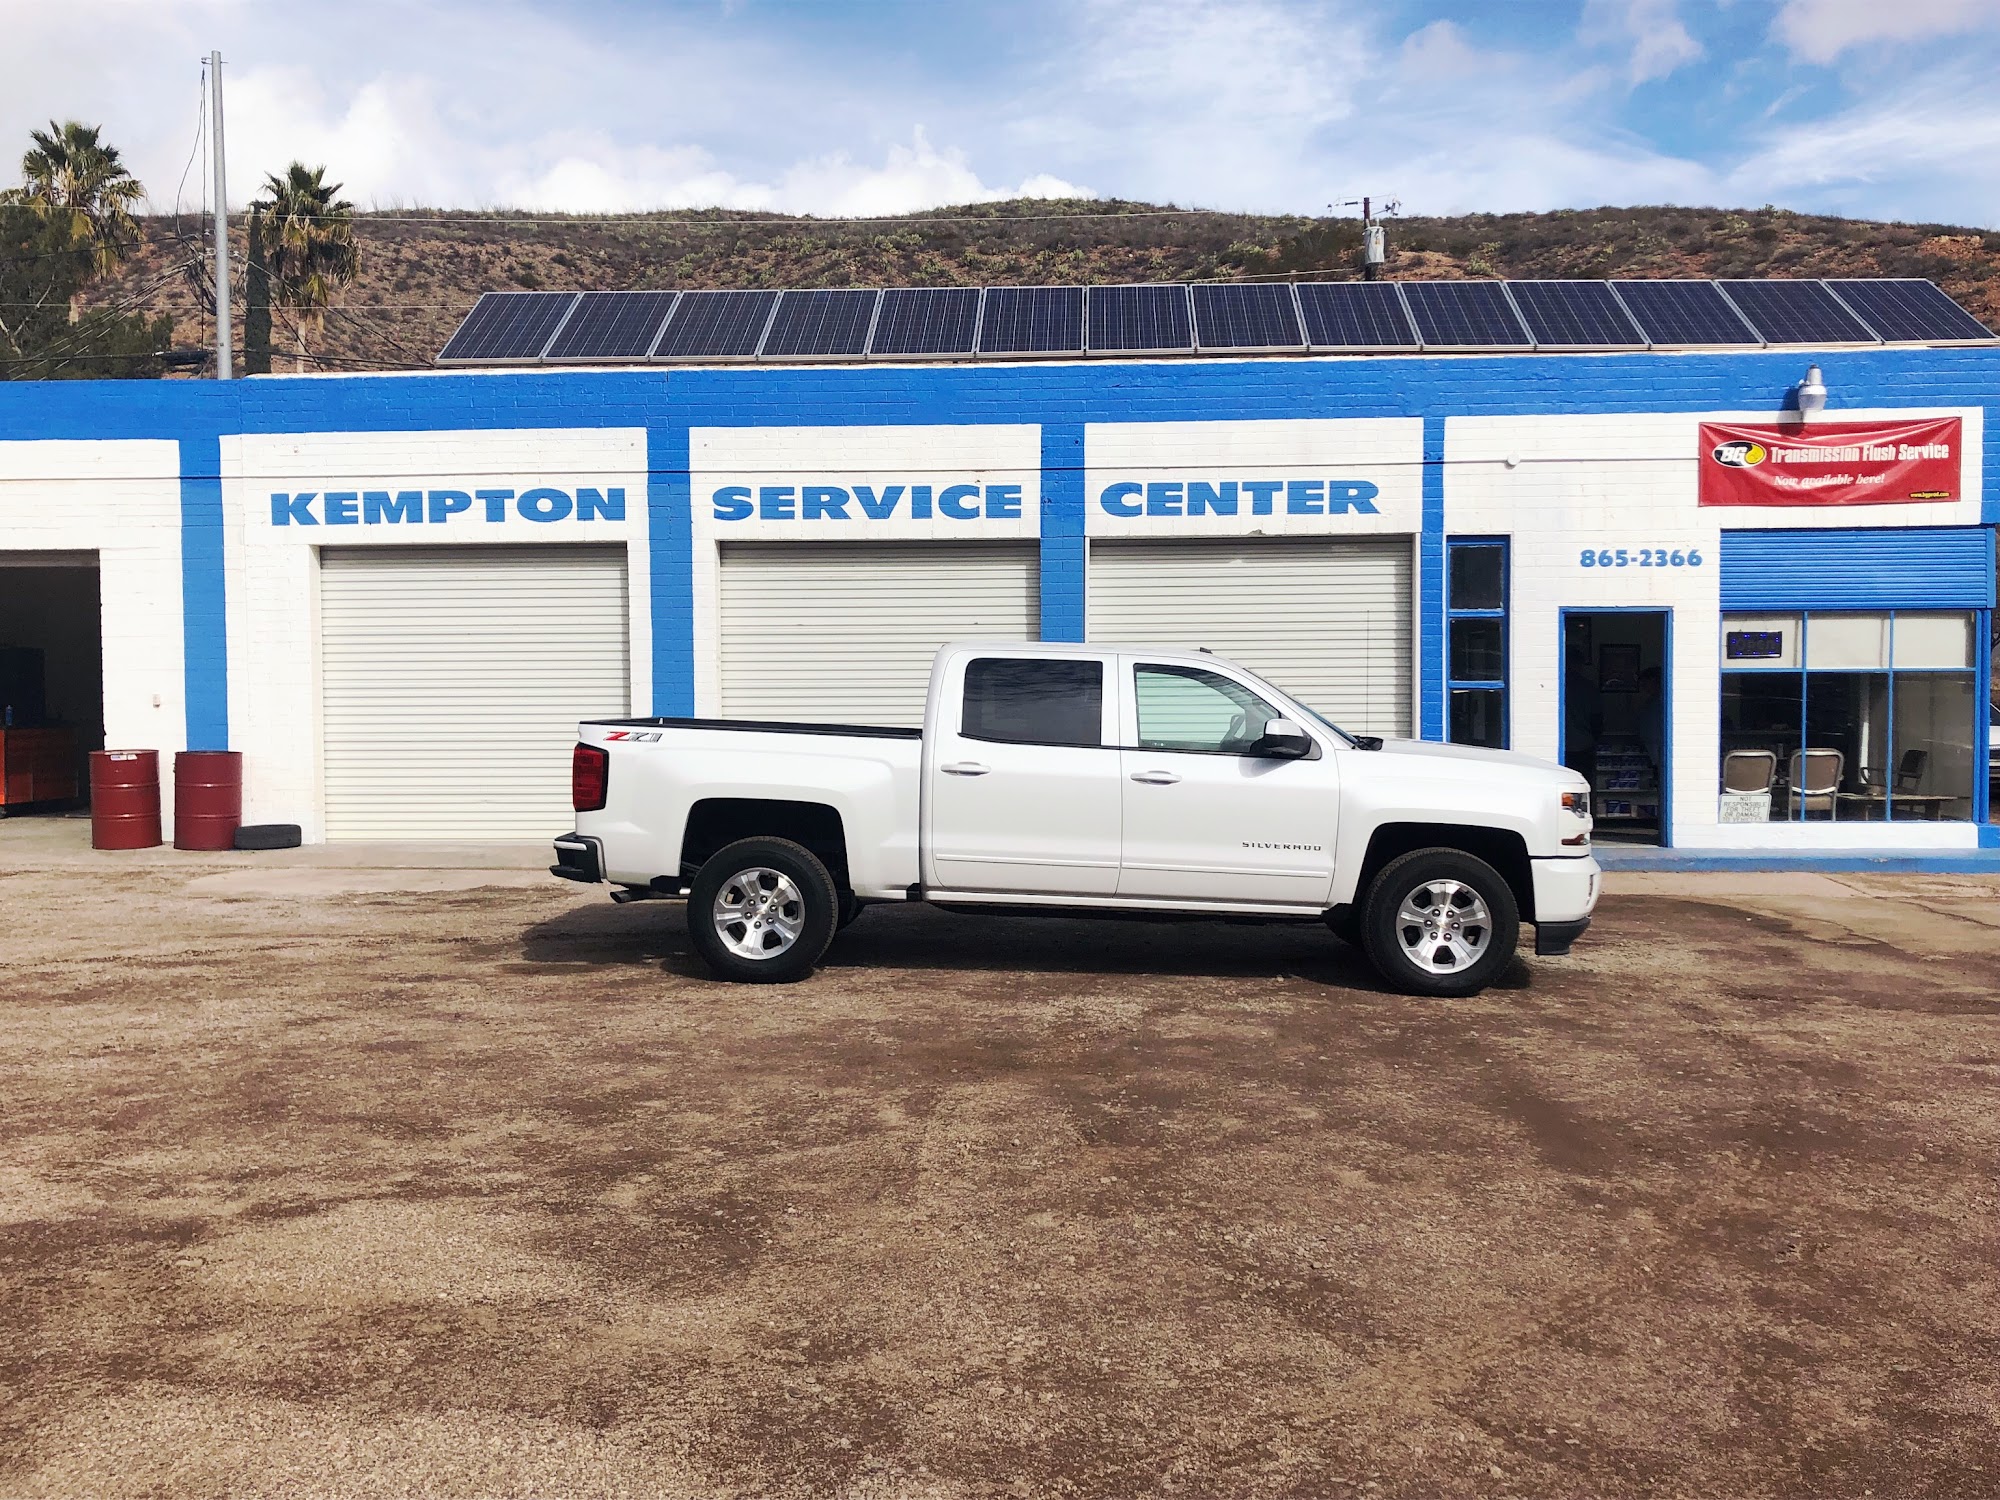 Kempton Chevrolet Service, Clifton 556 N Coronado Blvd, Clifton Arizona 85533